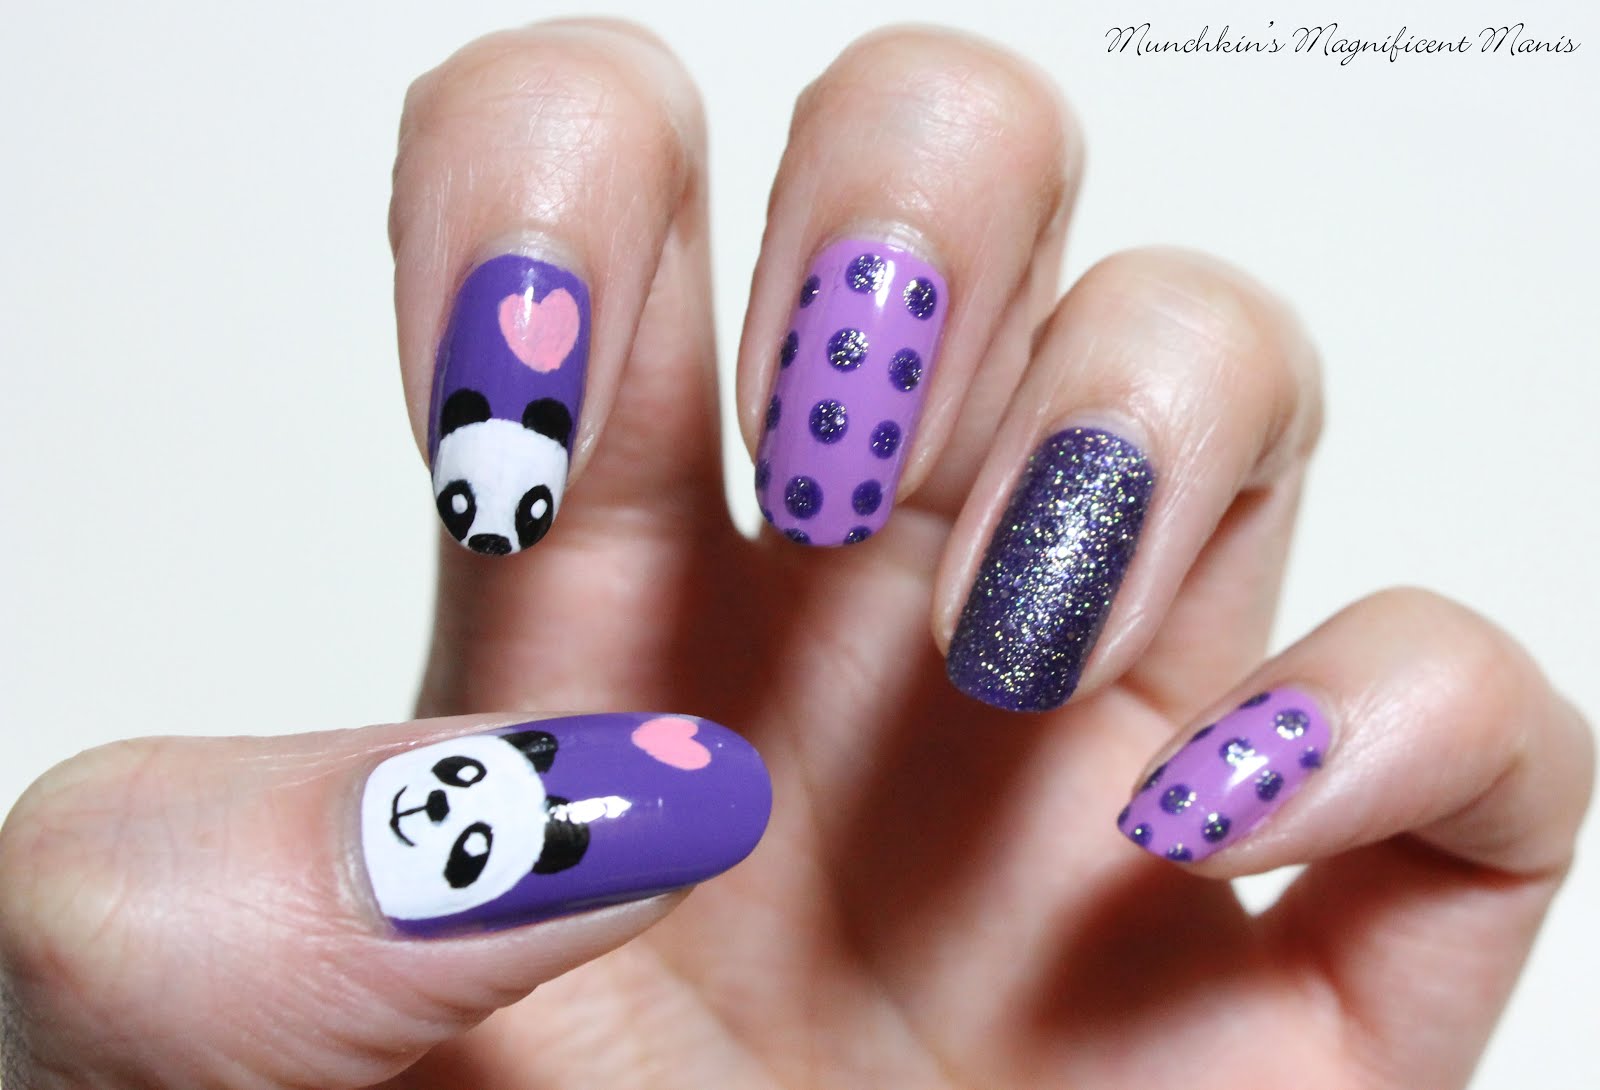 1. Cute Panda Acrylic Nail Design - wide 5